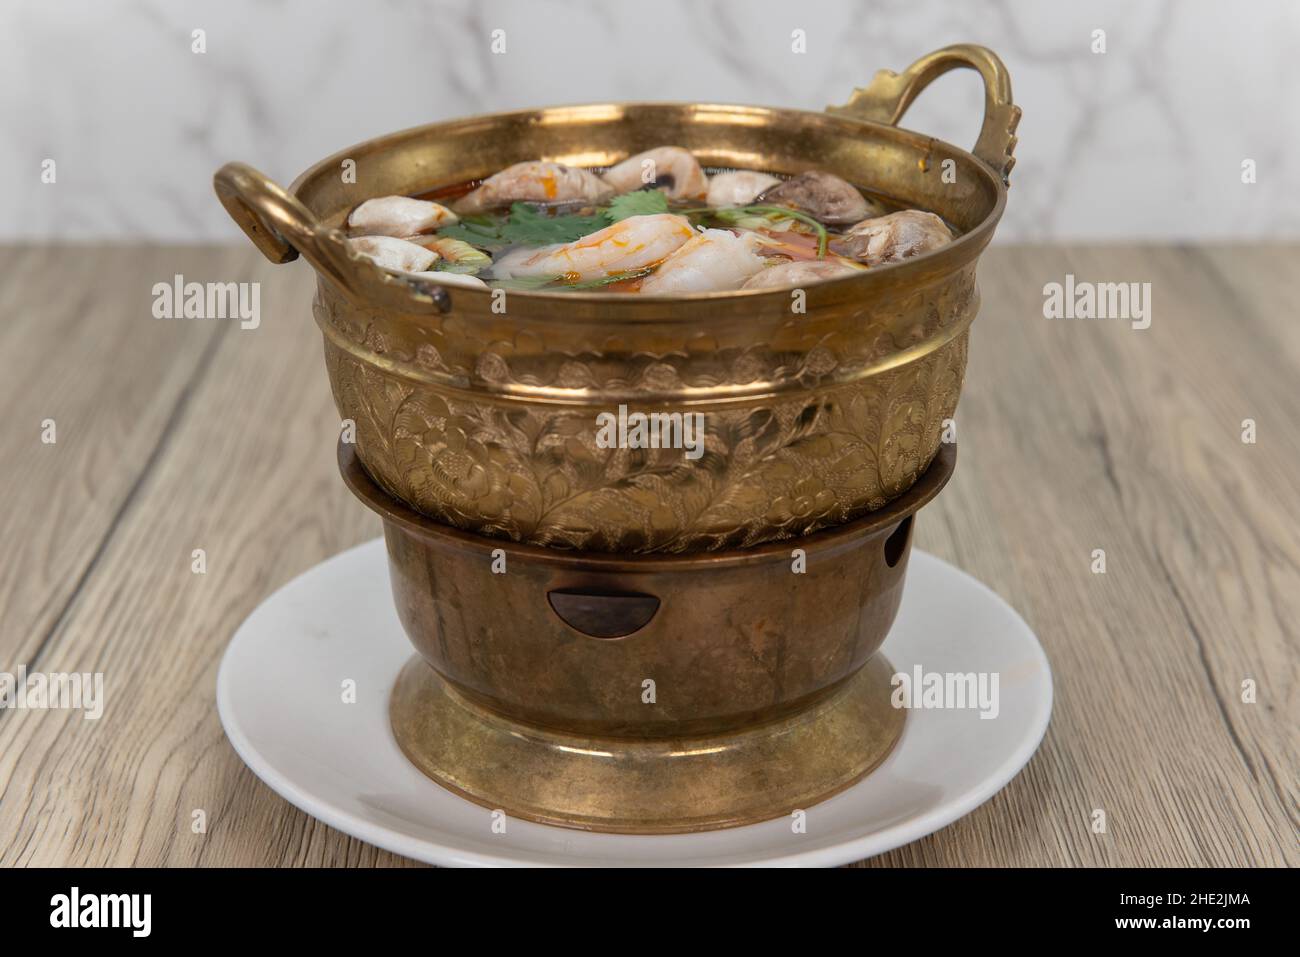 Kunstvoll verzierte Messingschüssel mit tom Yung goong Garnelensuppe, heiß und bereit zum Schlürfen serviert. Stockfoto